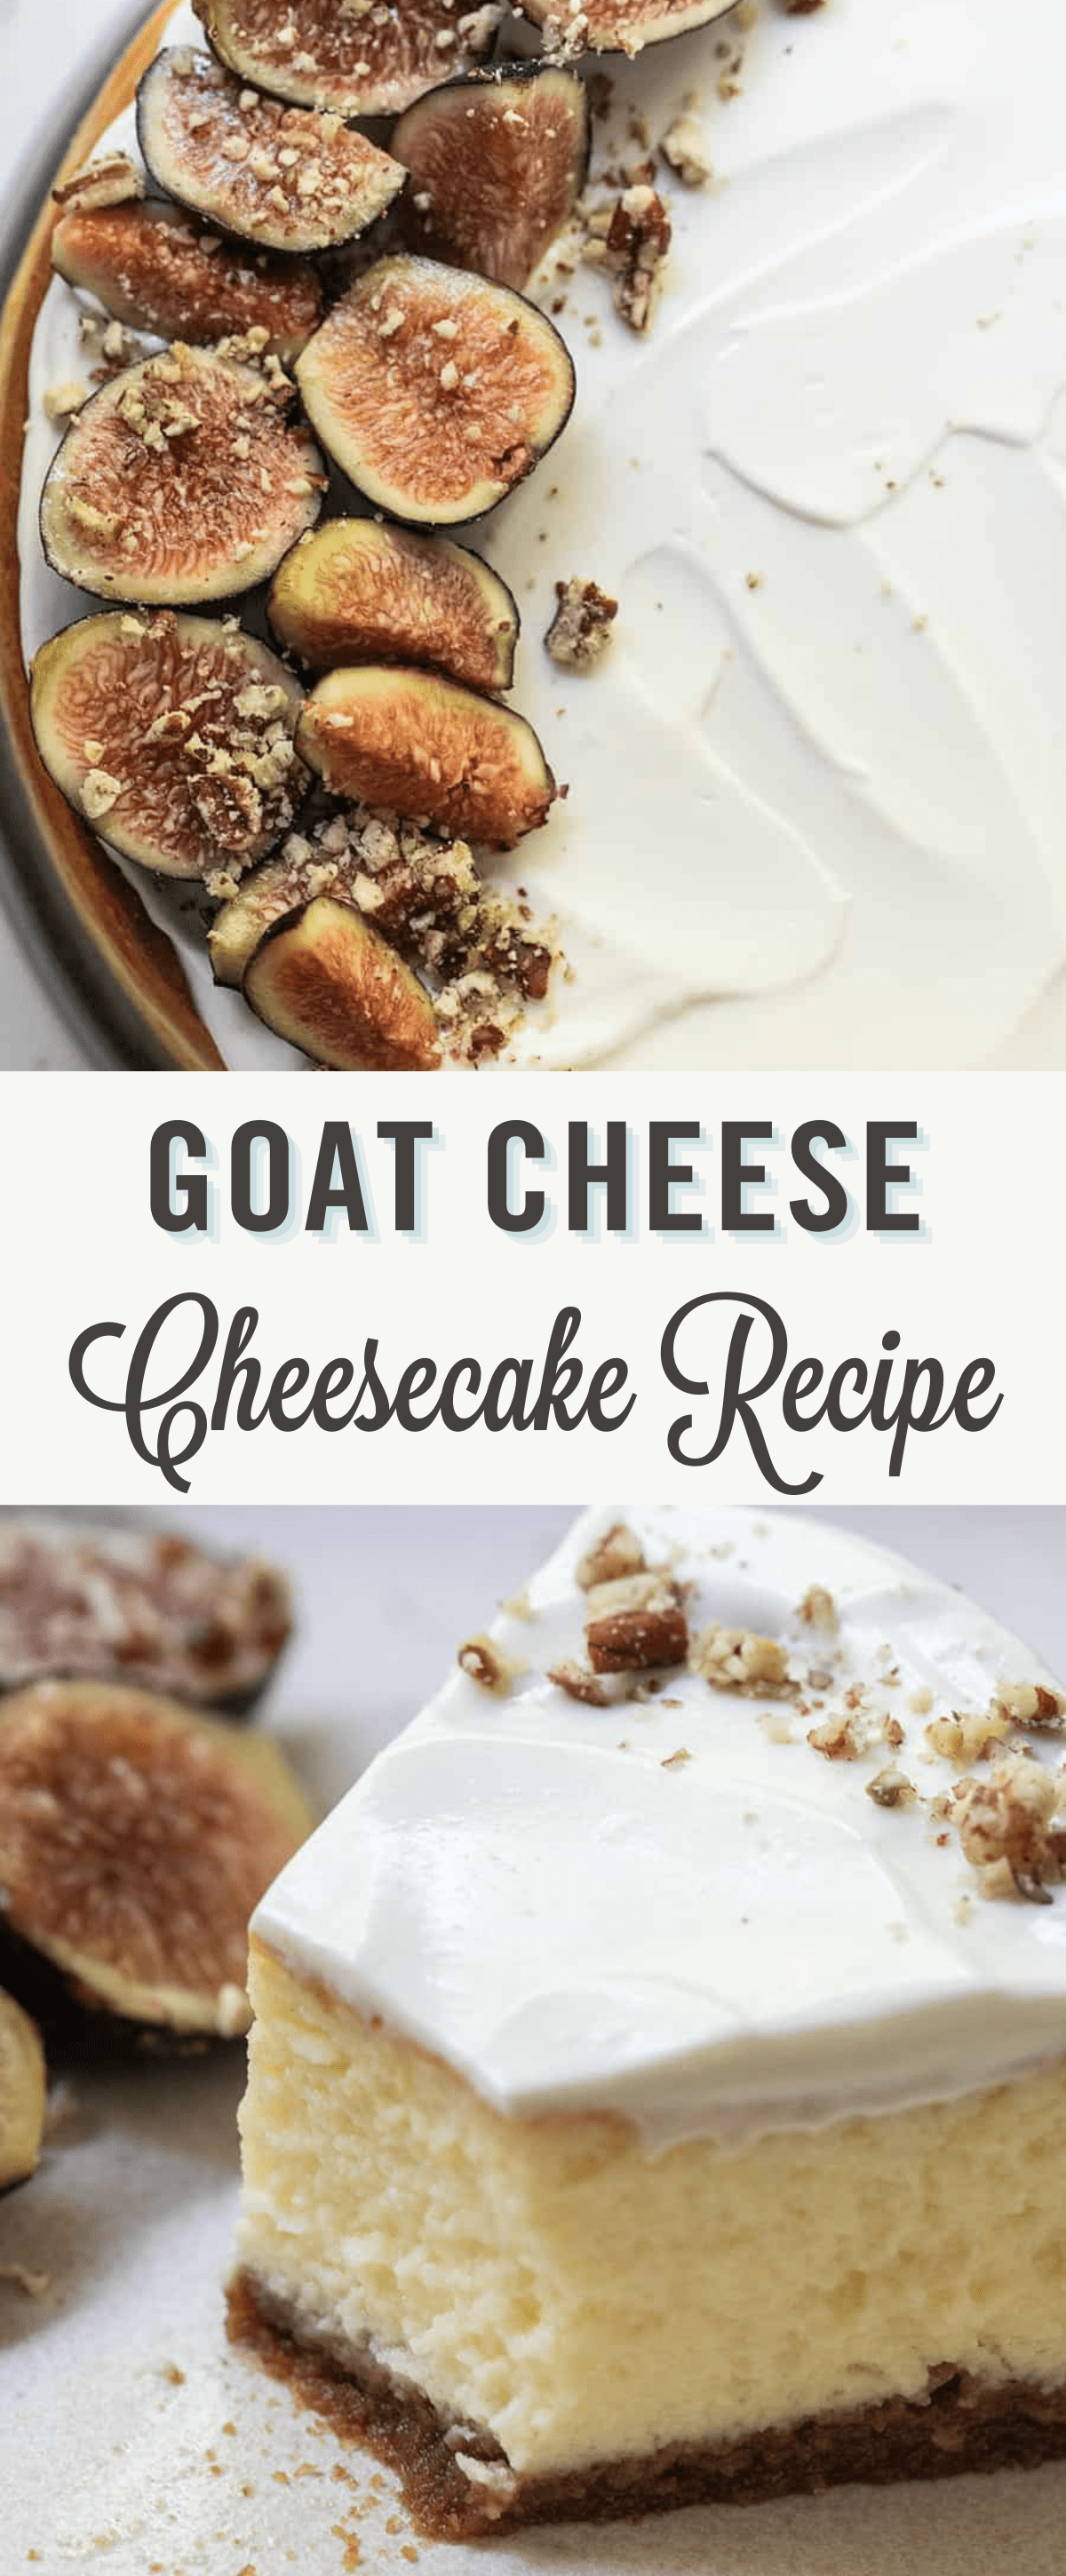 Goat cheese cheesecake recipe. 